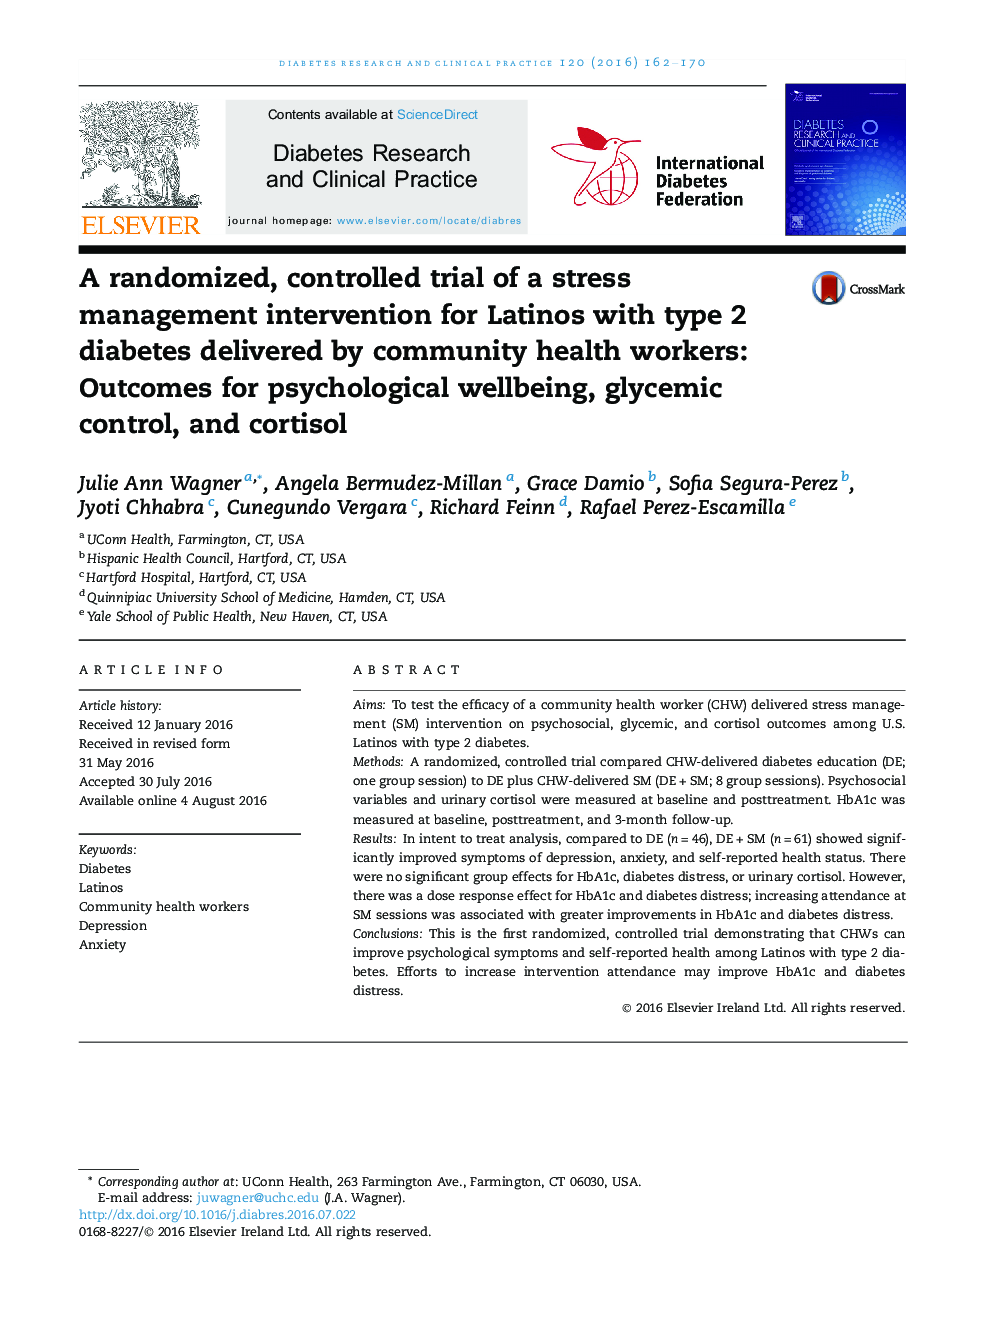 یک کارآزمایی تصادفی و کنترل شده از مداخله در مدیریت استرس برای لاتین ها با دیابت نوع 2 که توسط کارکنان بهداشت جامعه ارائه شده است: نتایج برای سلامت روان، کنترل گلیسمی و کورتیزول 